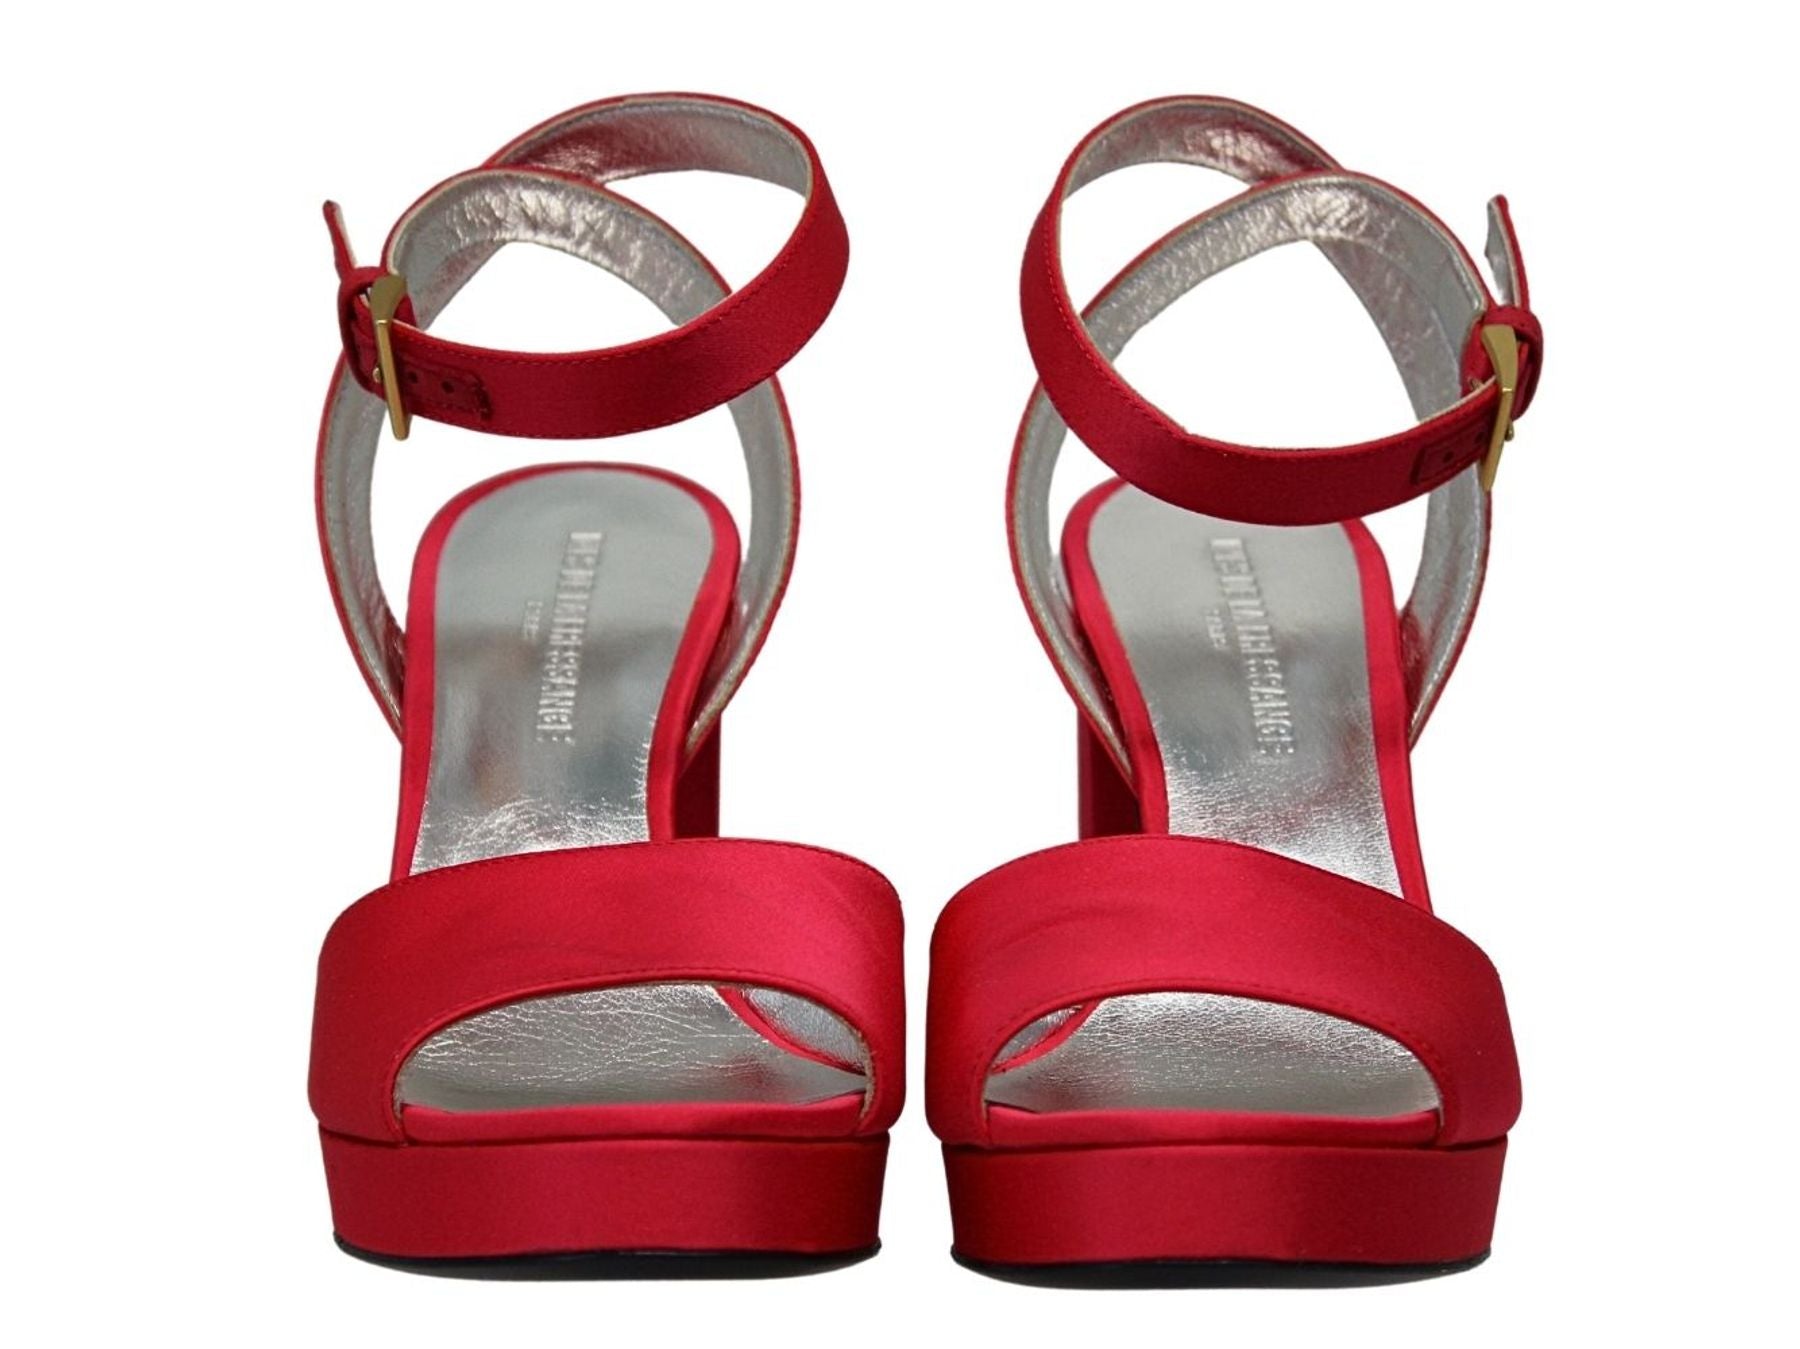 sandals-a-platform-in-red-silk